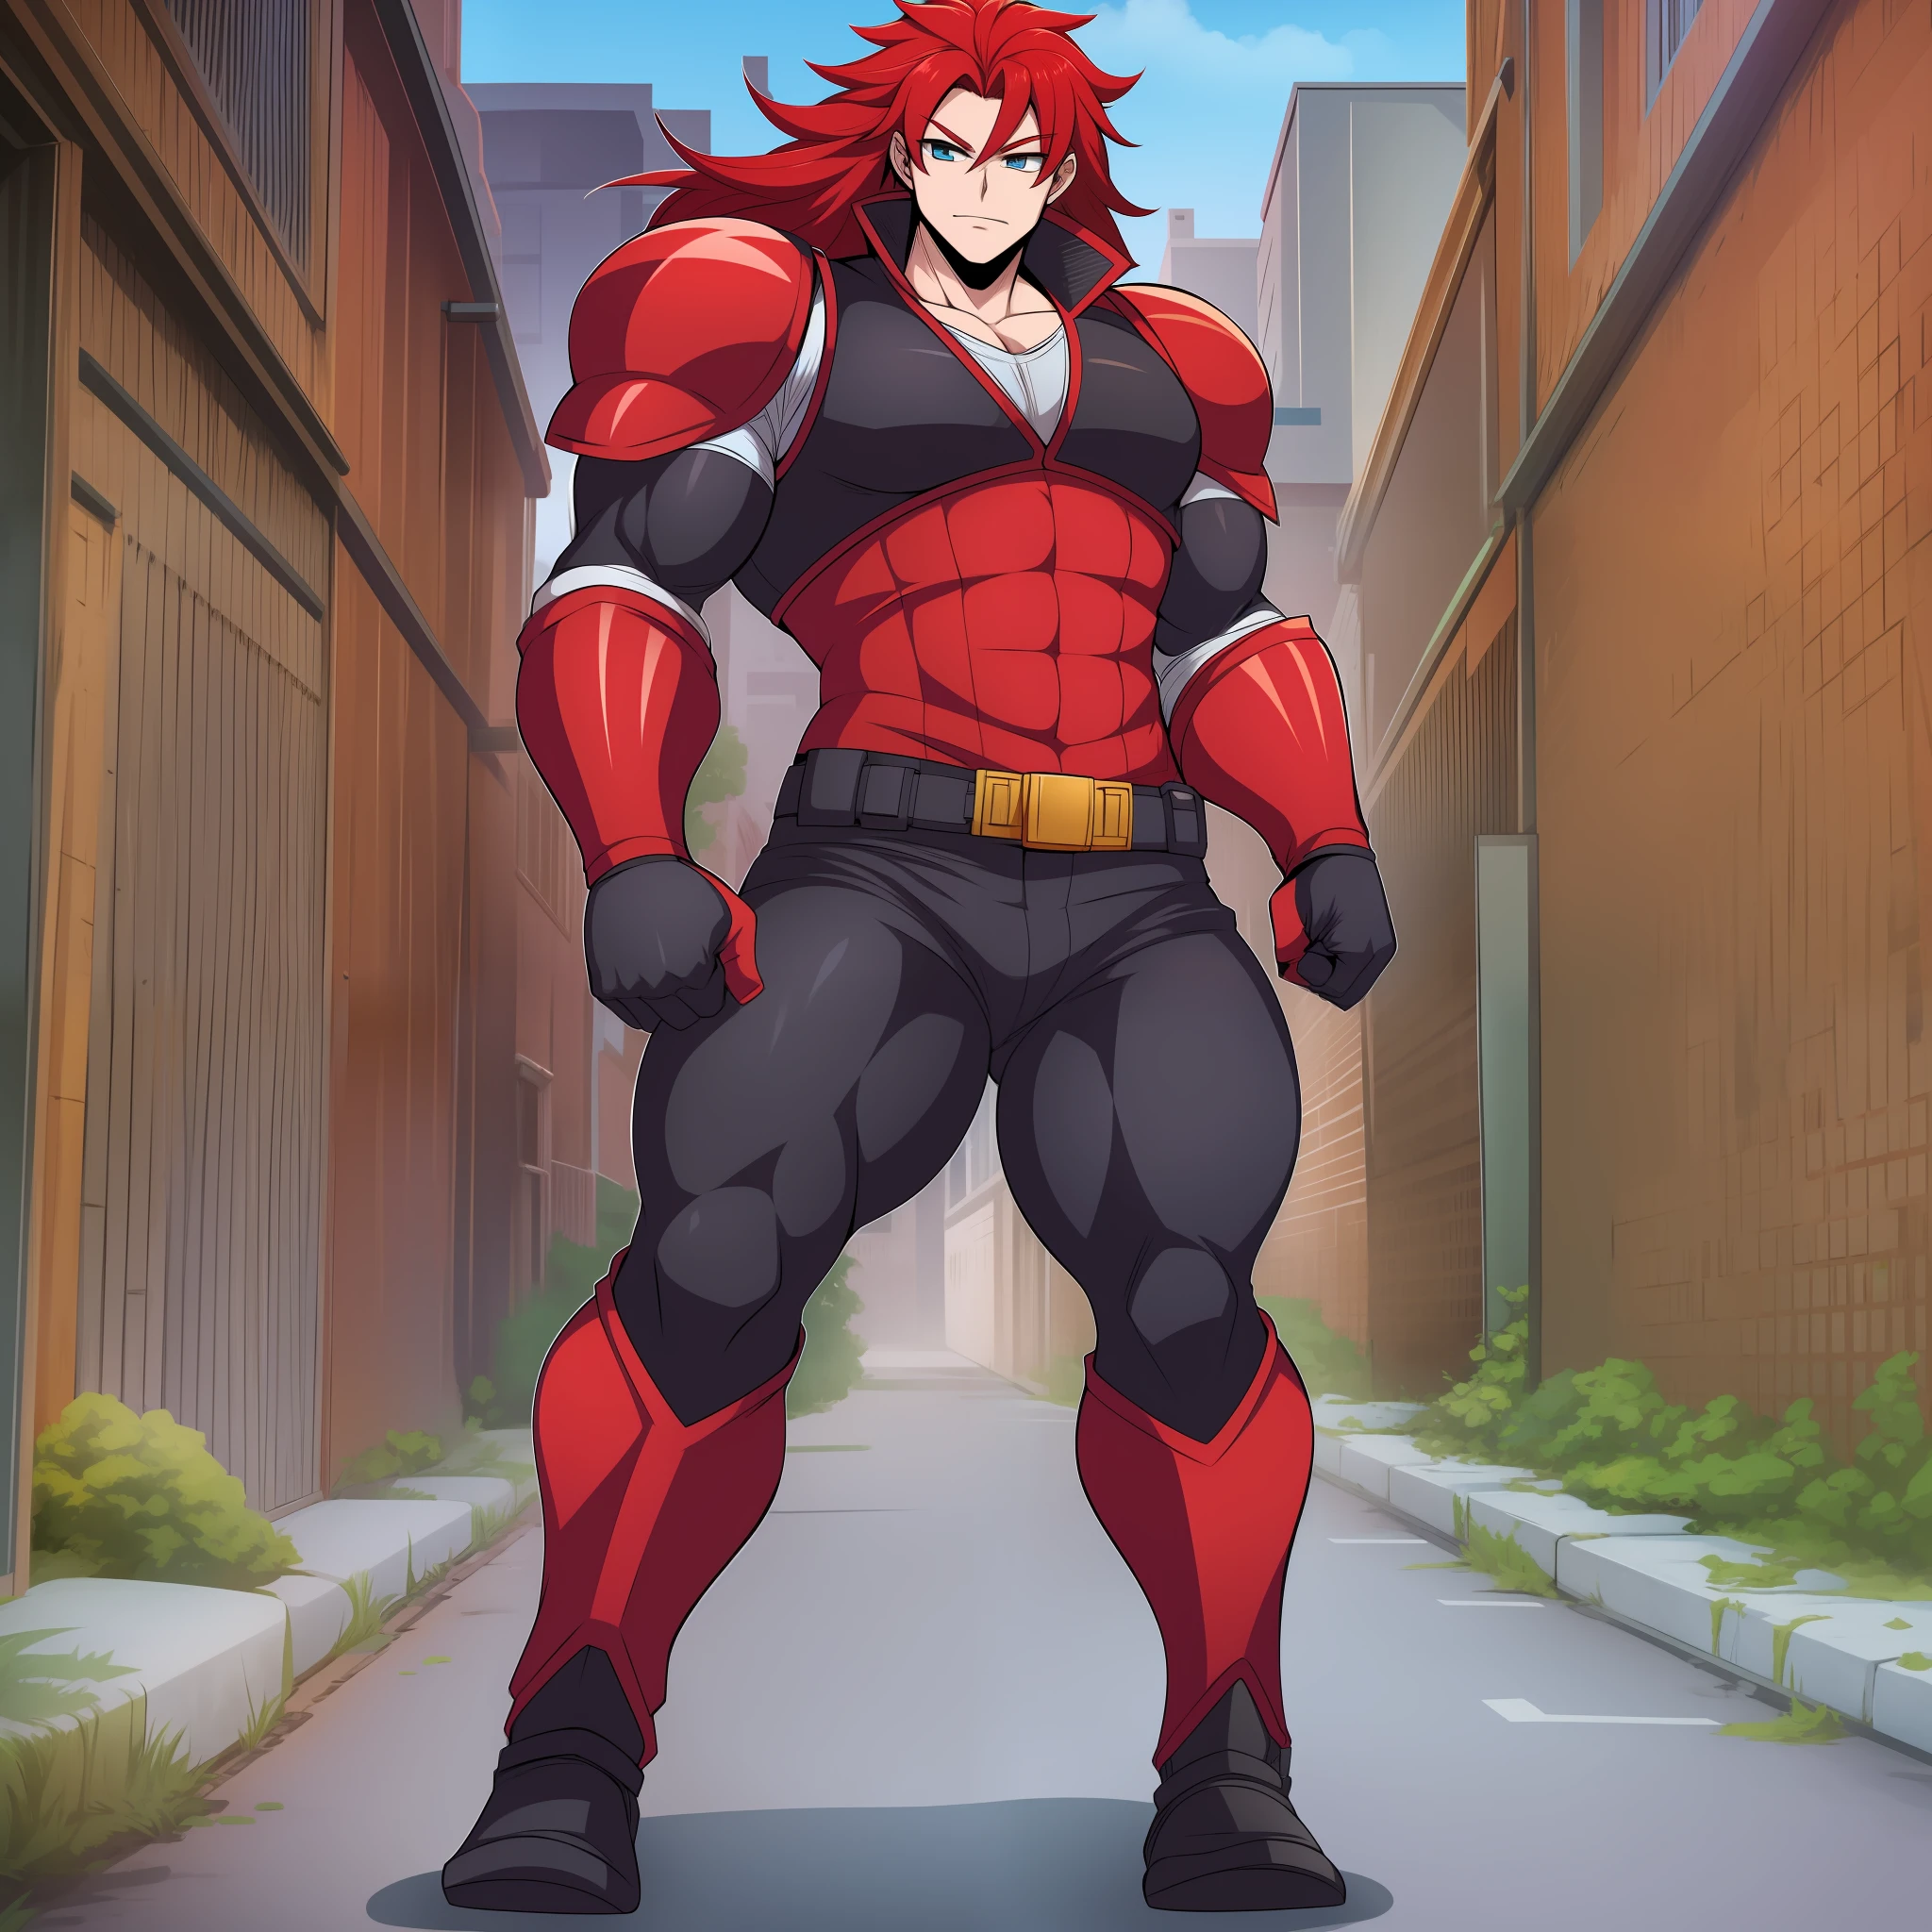 cabello rojo, Armadura completa, Héroe Sentai, hombre musculoso pelo largo, pantalones, chaleco, mantea, paños negros, cuerpo completo, caminando, retrato